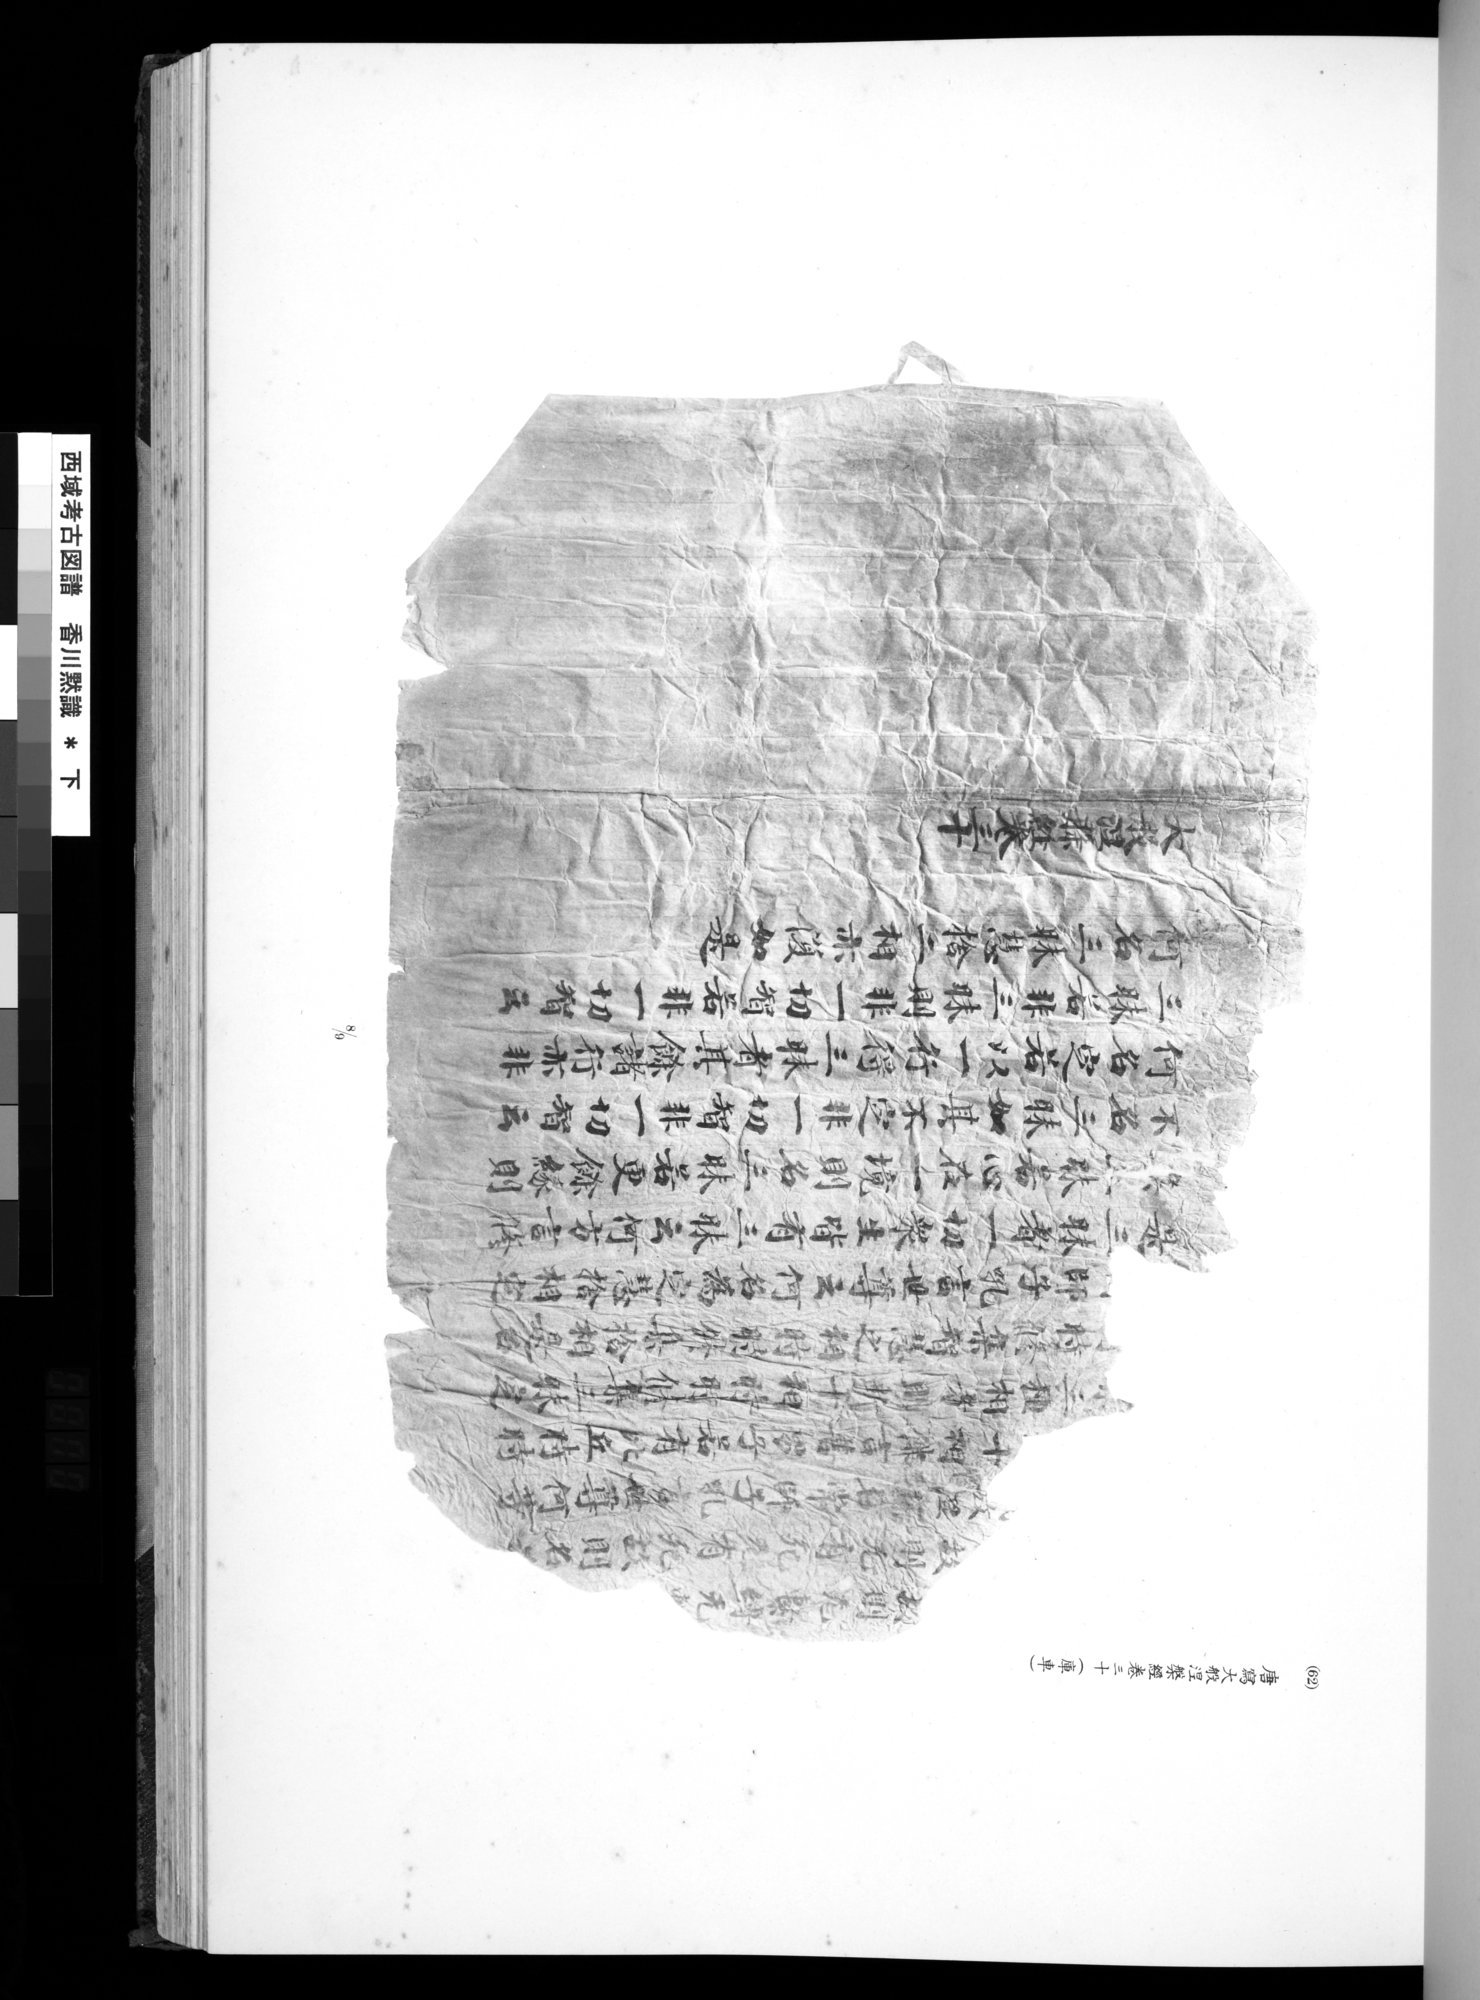 西域考古図譜 : vol.2 / 139 ページ（白黒高解像度画像）